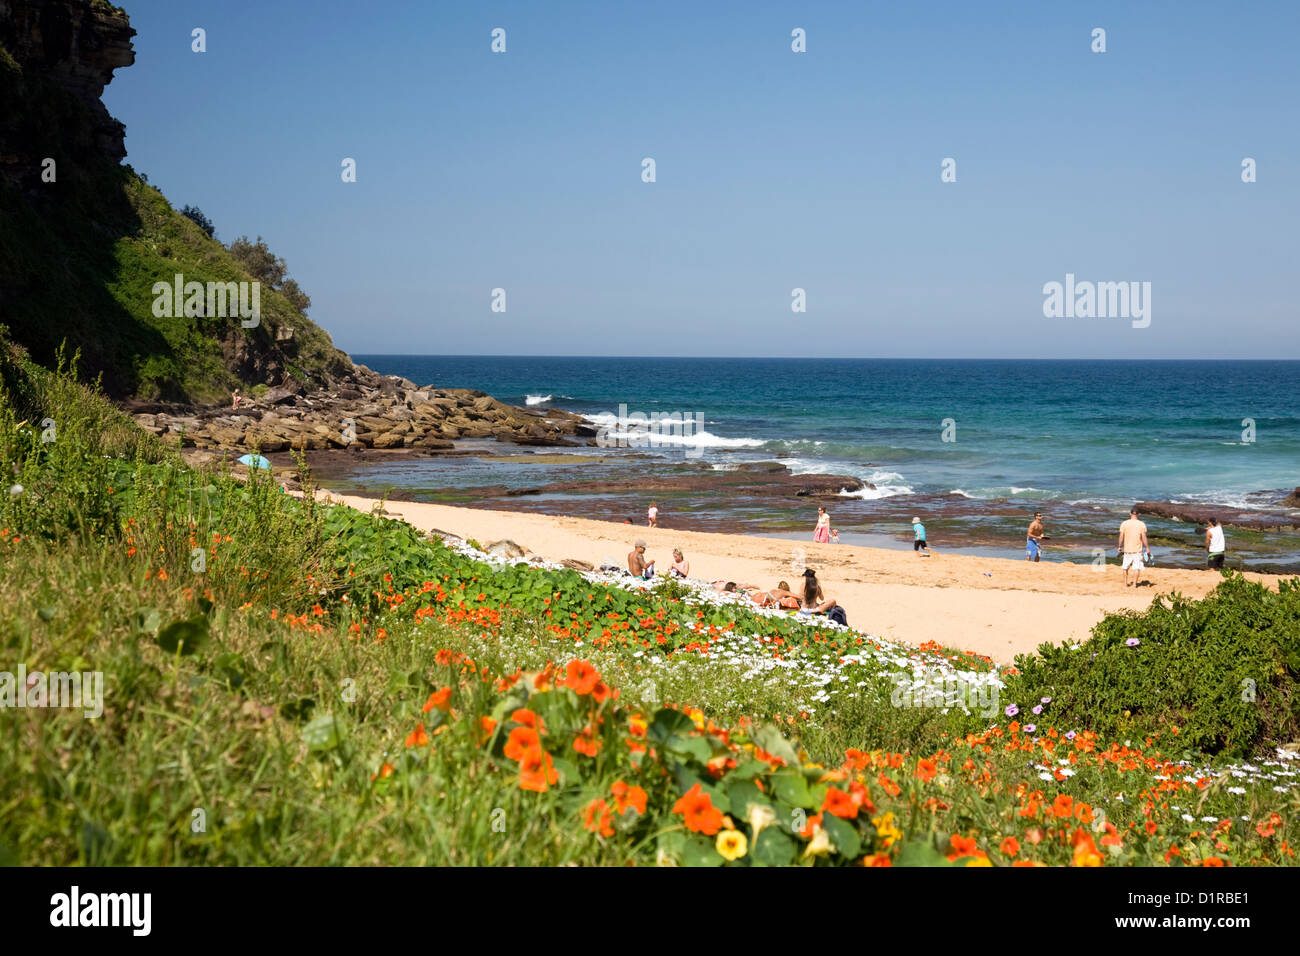 Plage de Bungan, l'une des célèbres plages du nord de sydney en un jour de printemps, fleurs sauvages autour de la plage, Nouvelle-Galles du Sud, Australie Banque D'Images